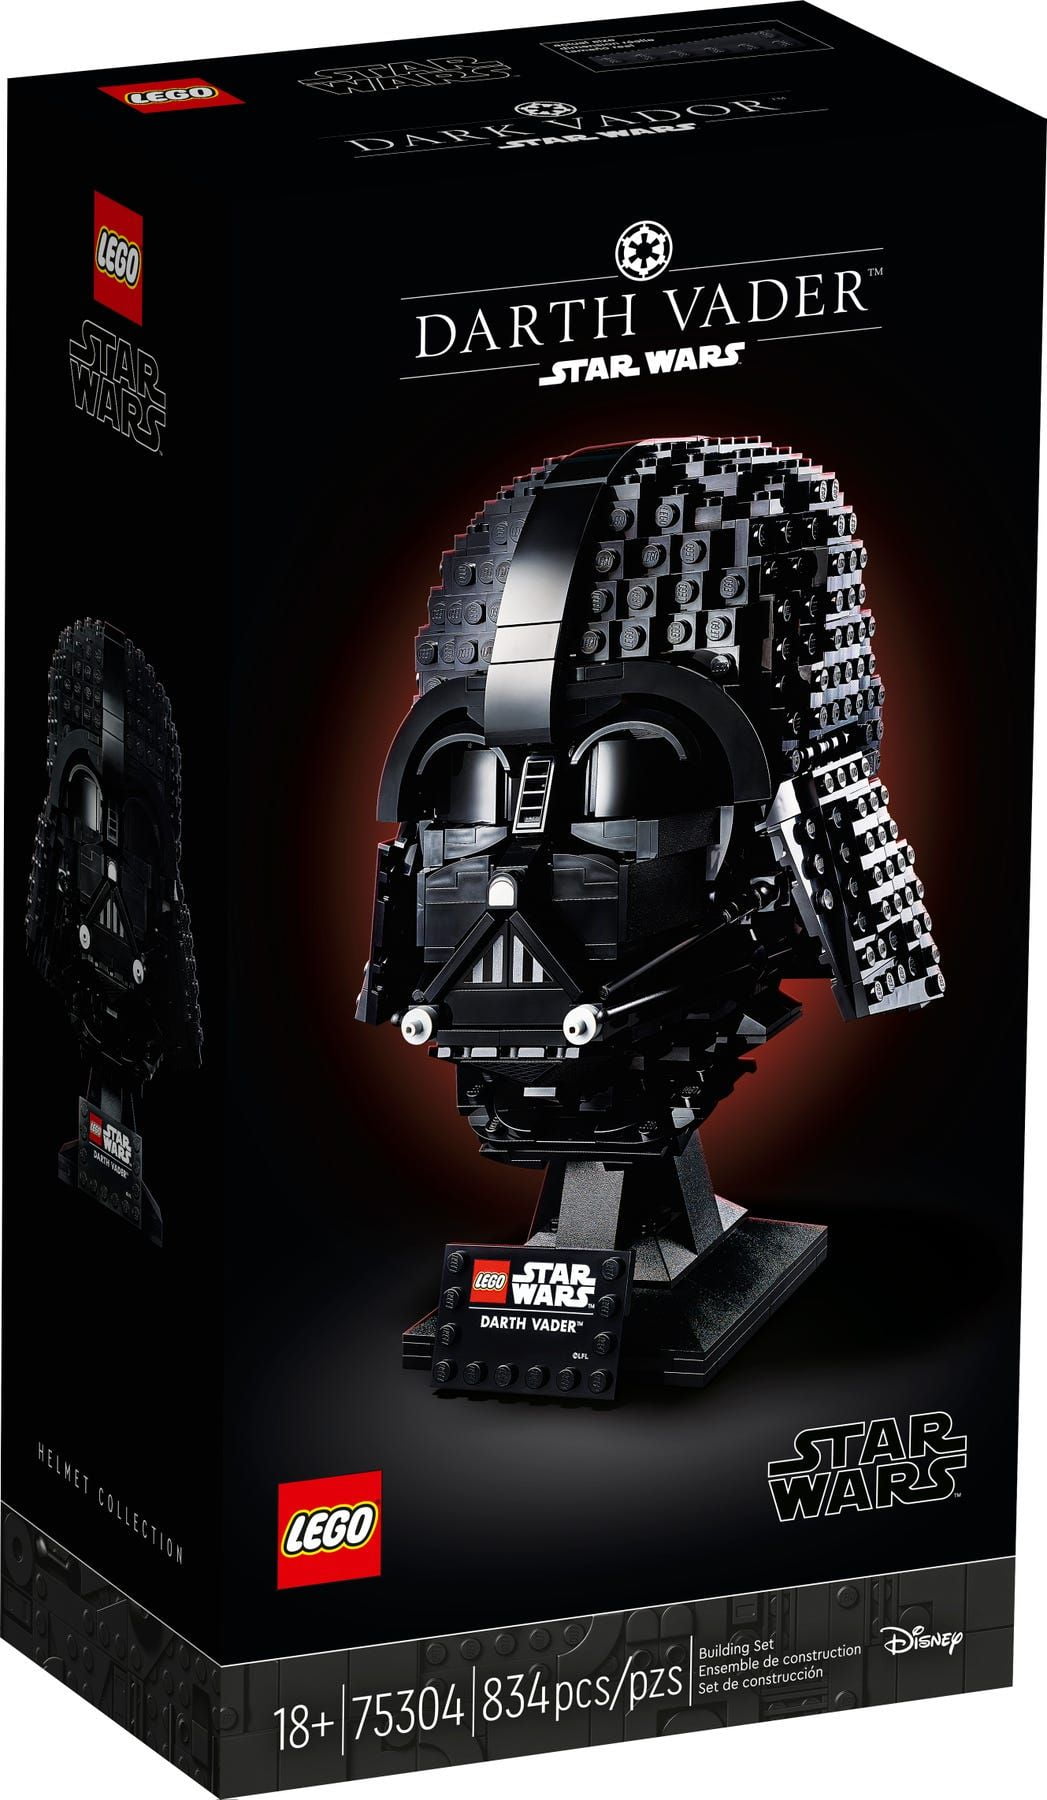 Darth Vader Helmet LEGO Star Wars 75304